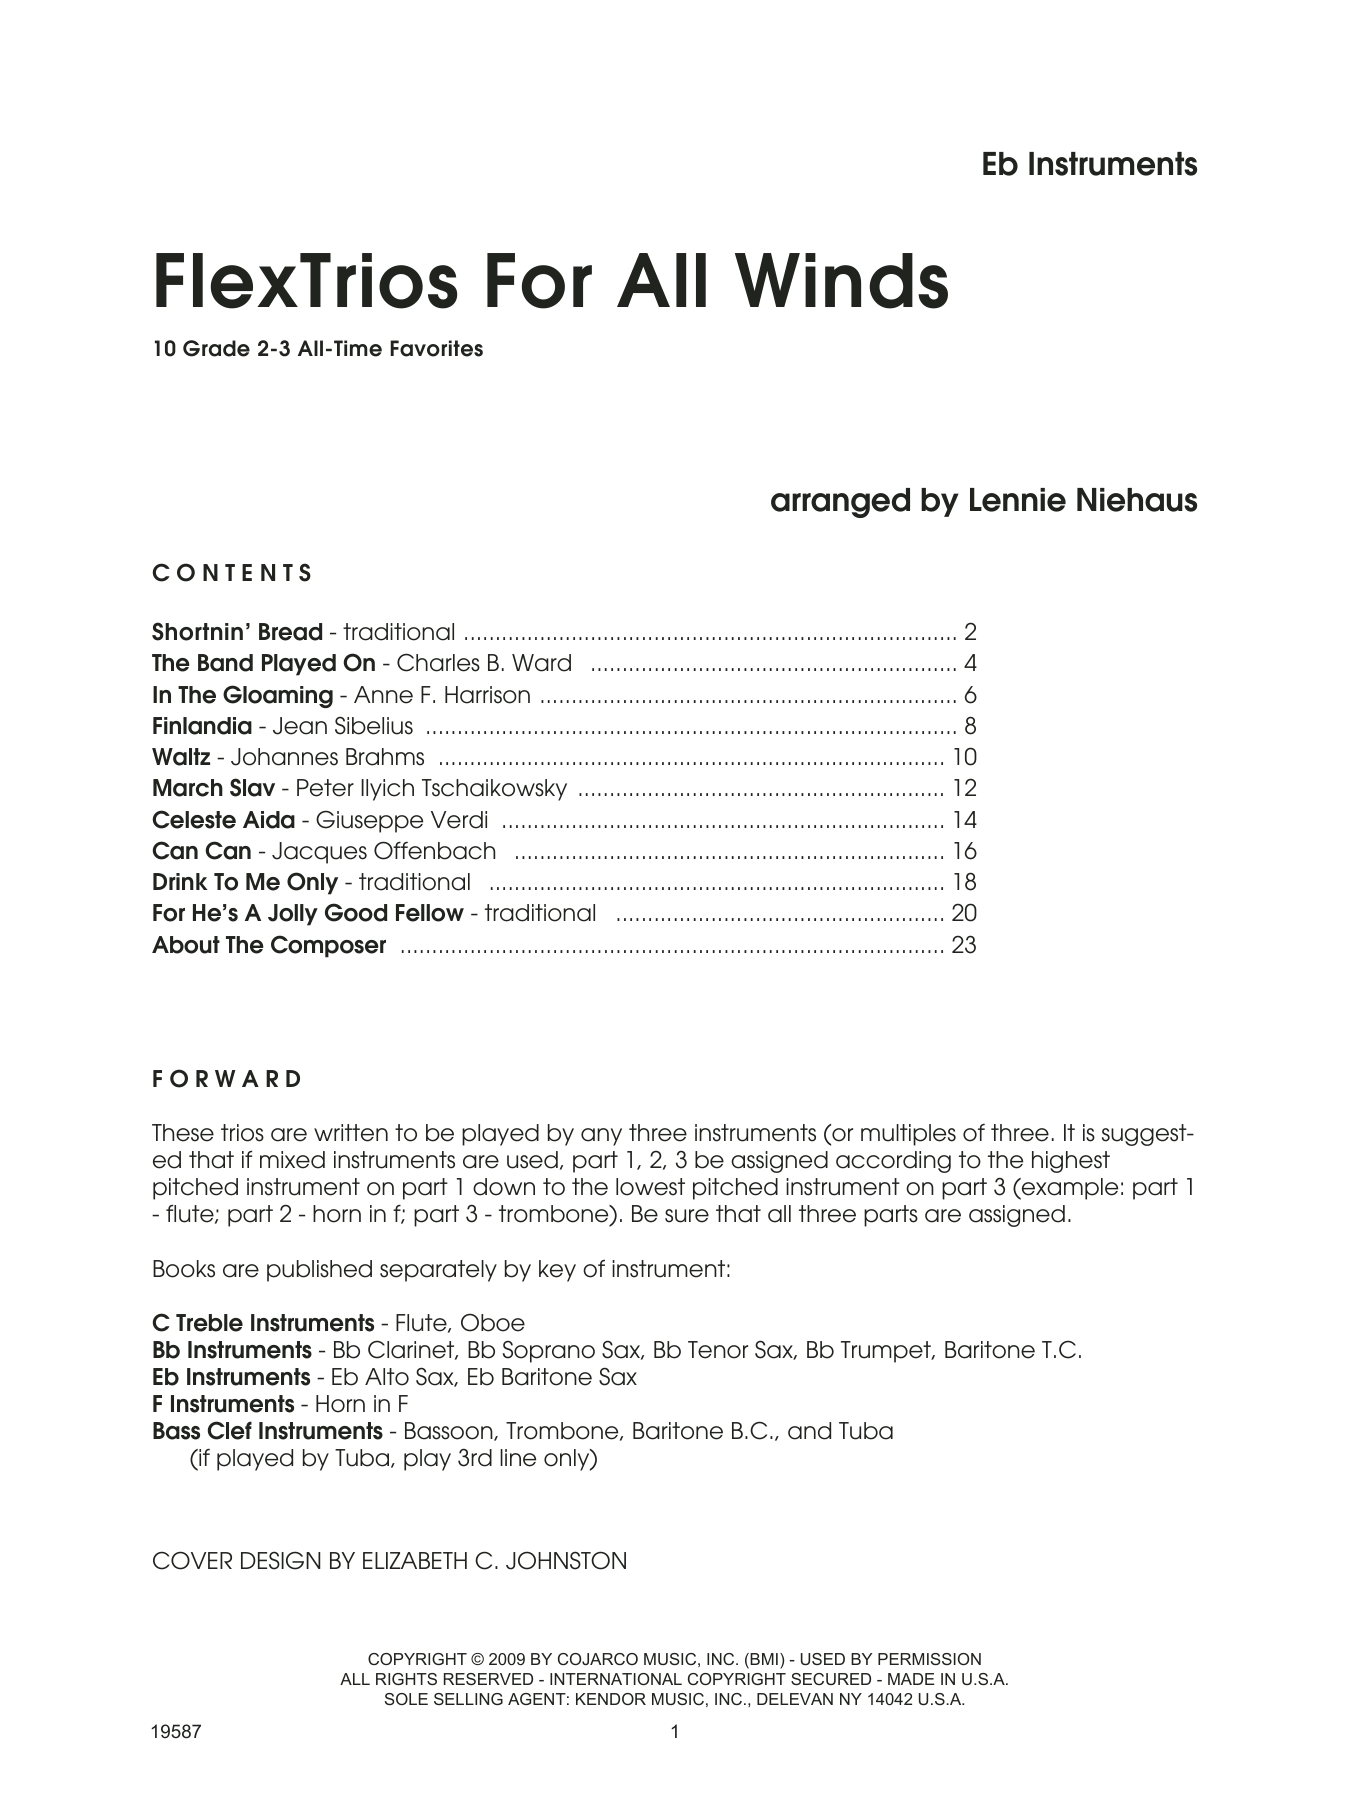 FlexTrios For All Winds (Eb Instruments) - Eb Instruments (Performance Ensemble) von Lennie Niehaus